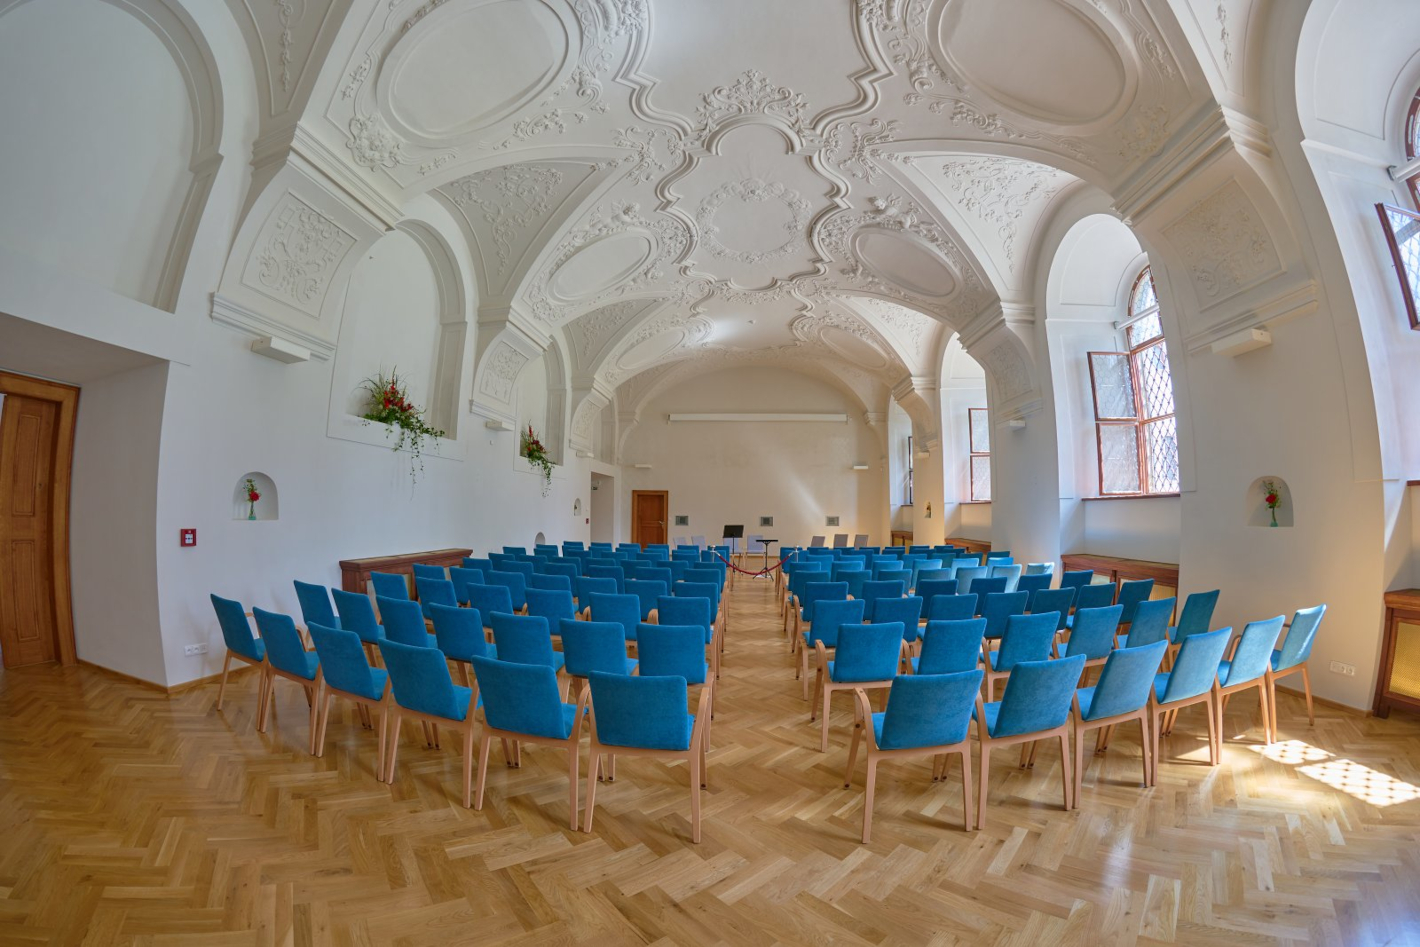 Sál refektáře jezuitské koleje s ozdobným štukovým stropem, v sále je několik řad modrých polstrovaných židlí.